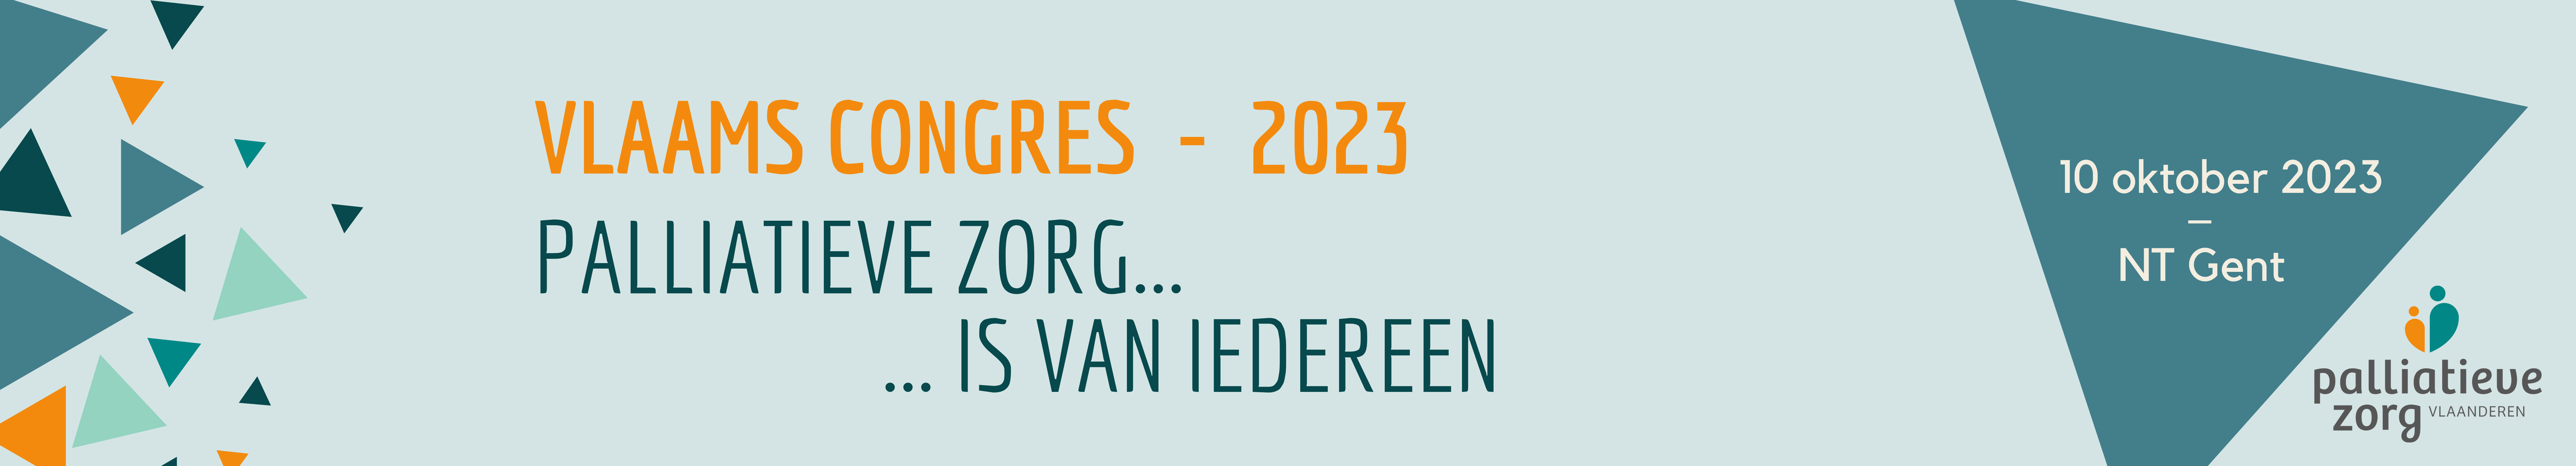 Vlaams congres 2023 palliatieve zorg is van iedereen